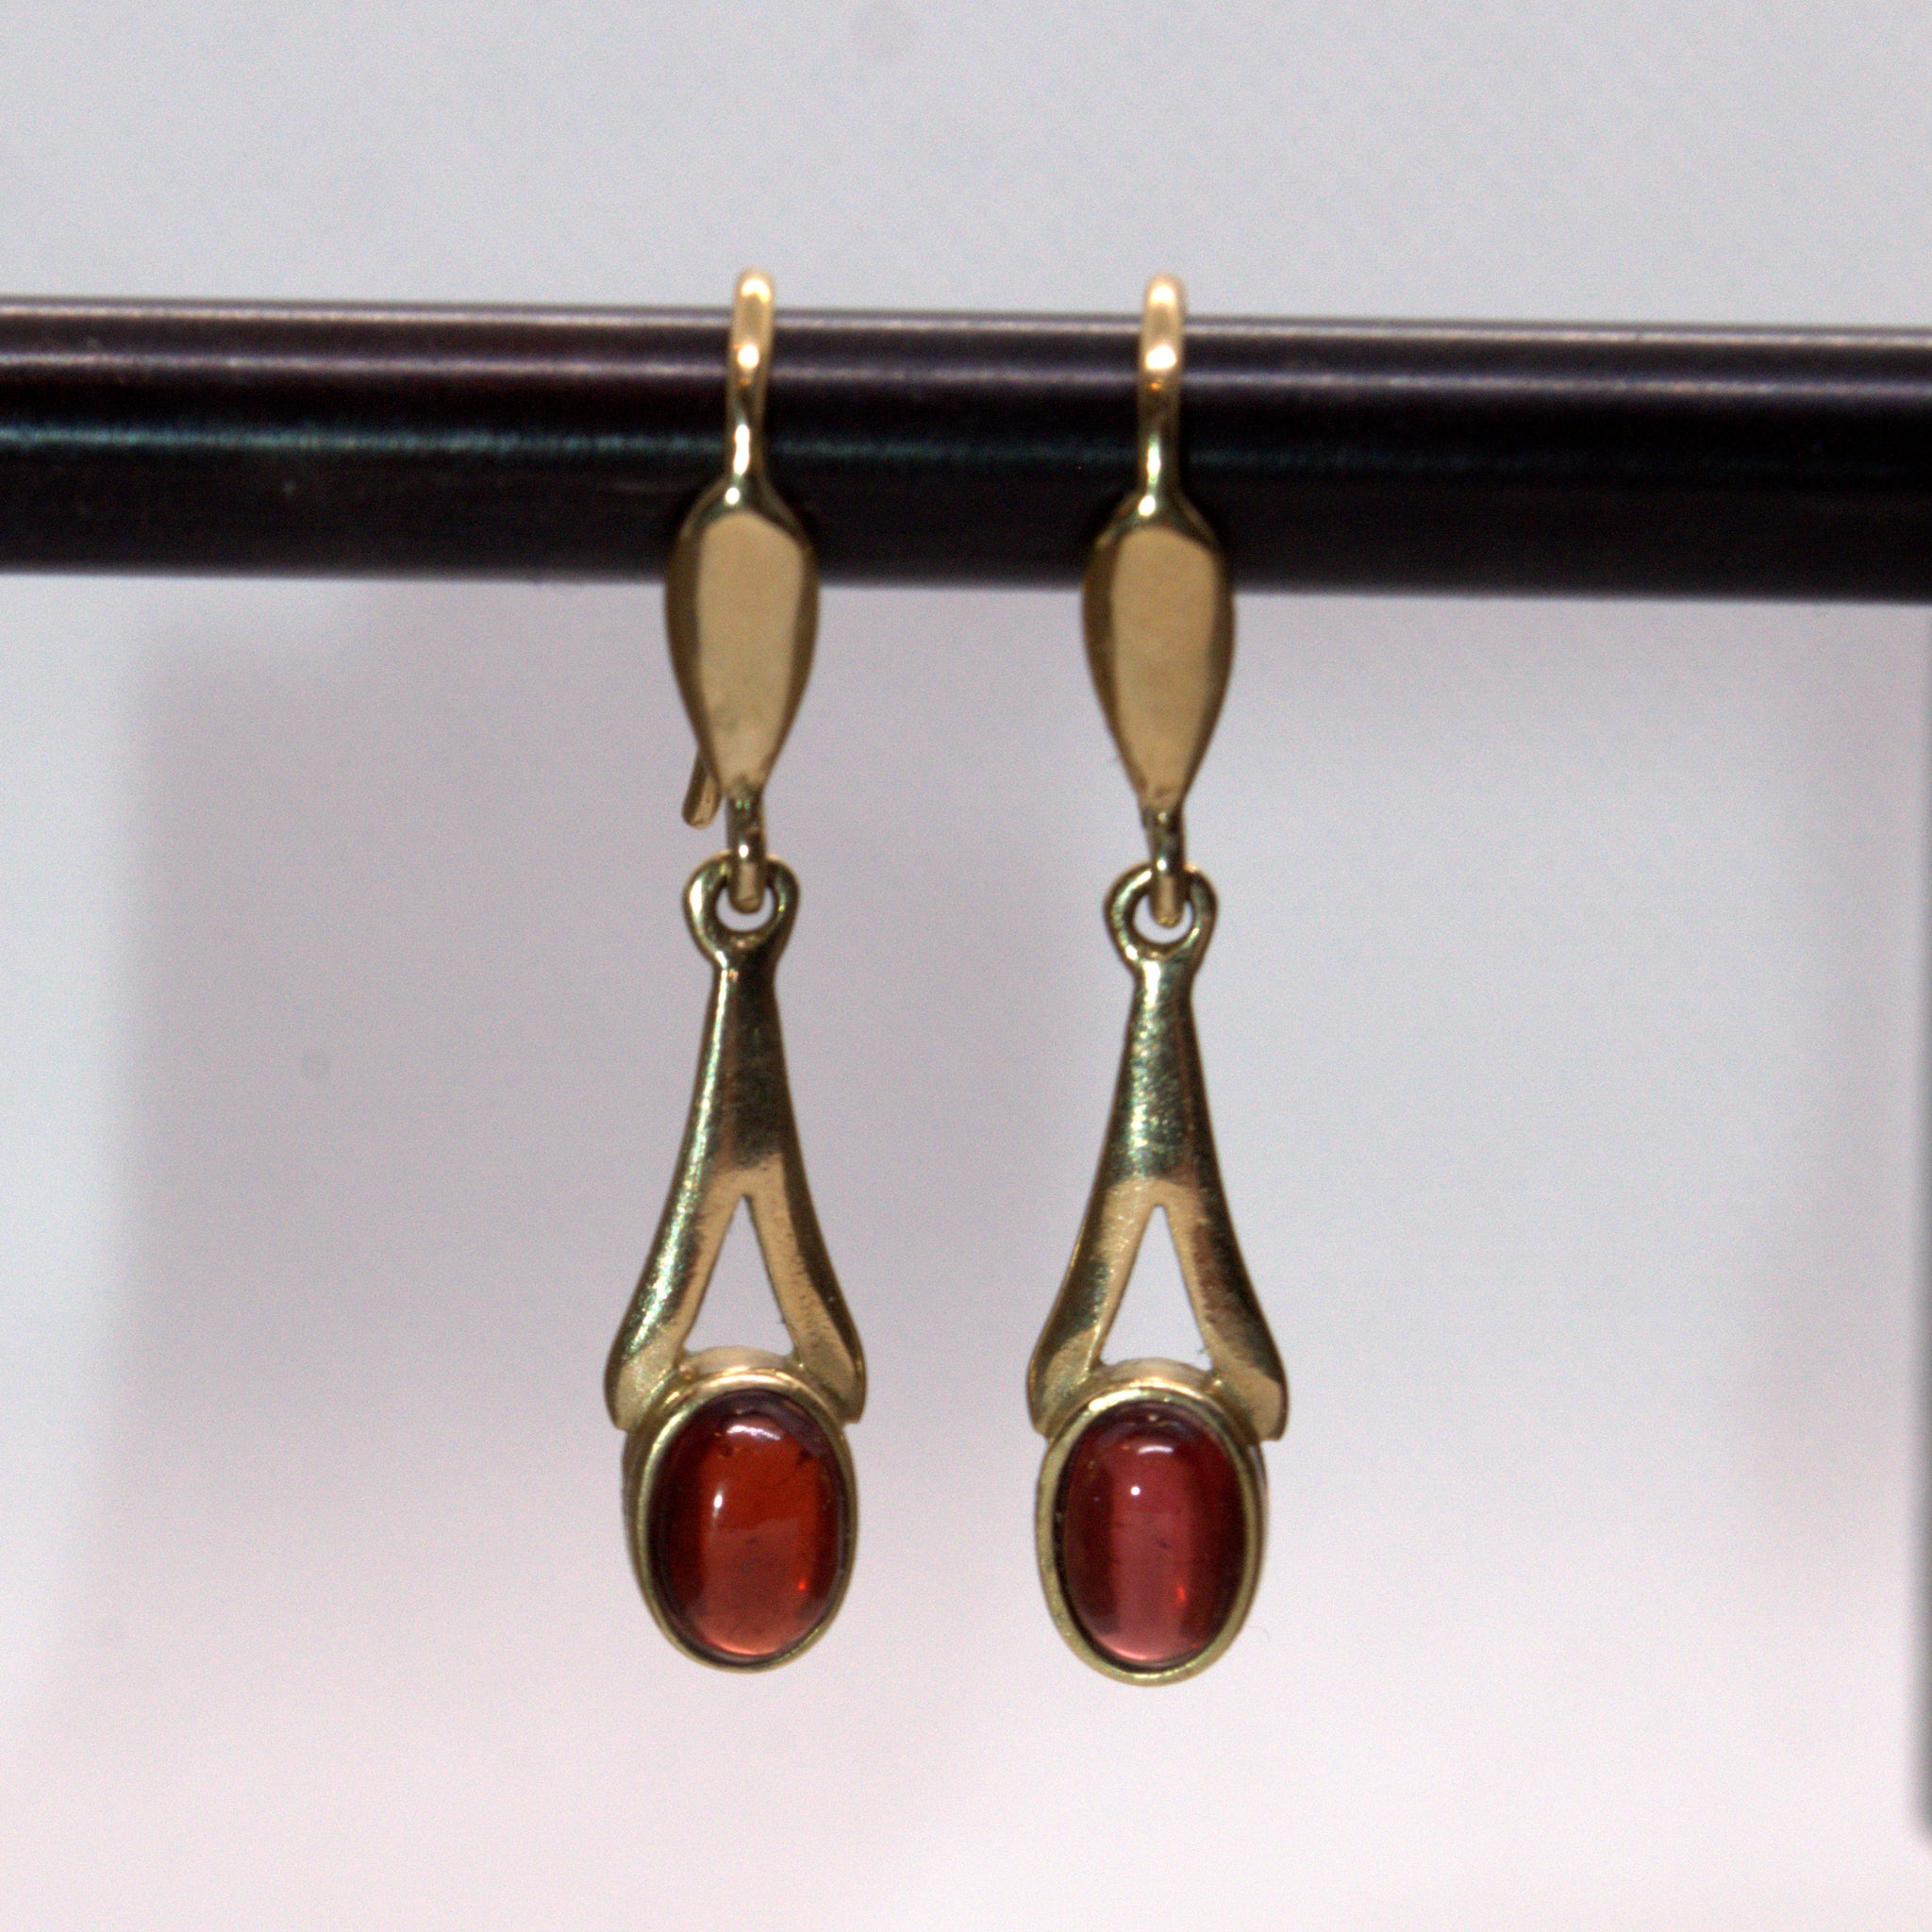 Rhodolite Garnet & Diamond Drop Earrings in 9ct Yellow Gold